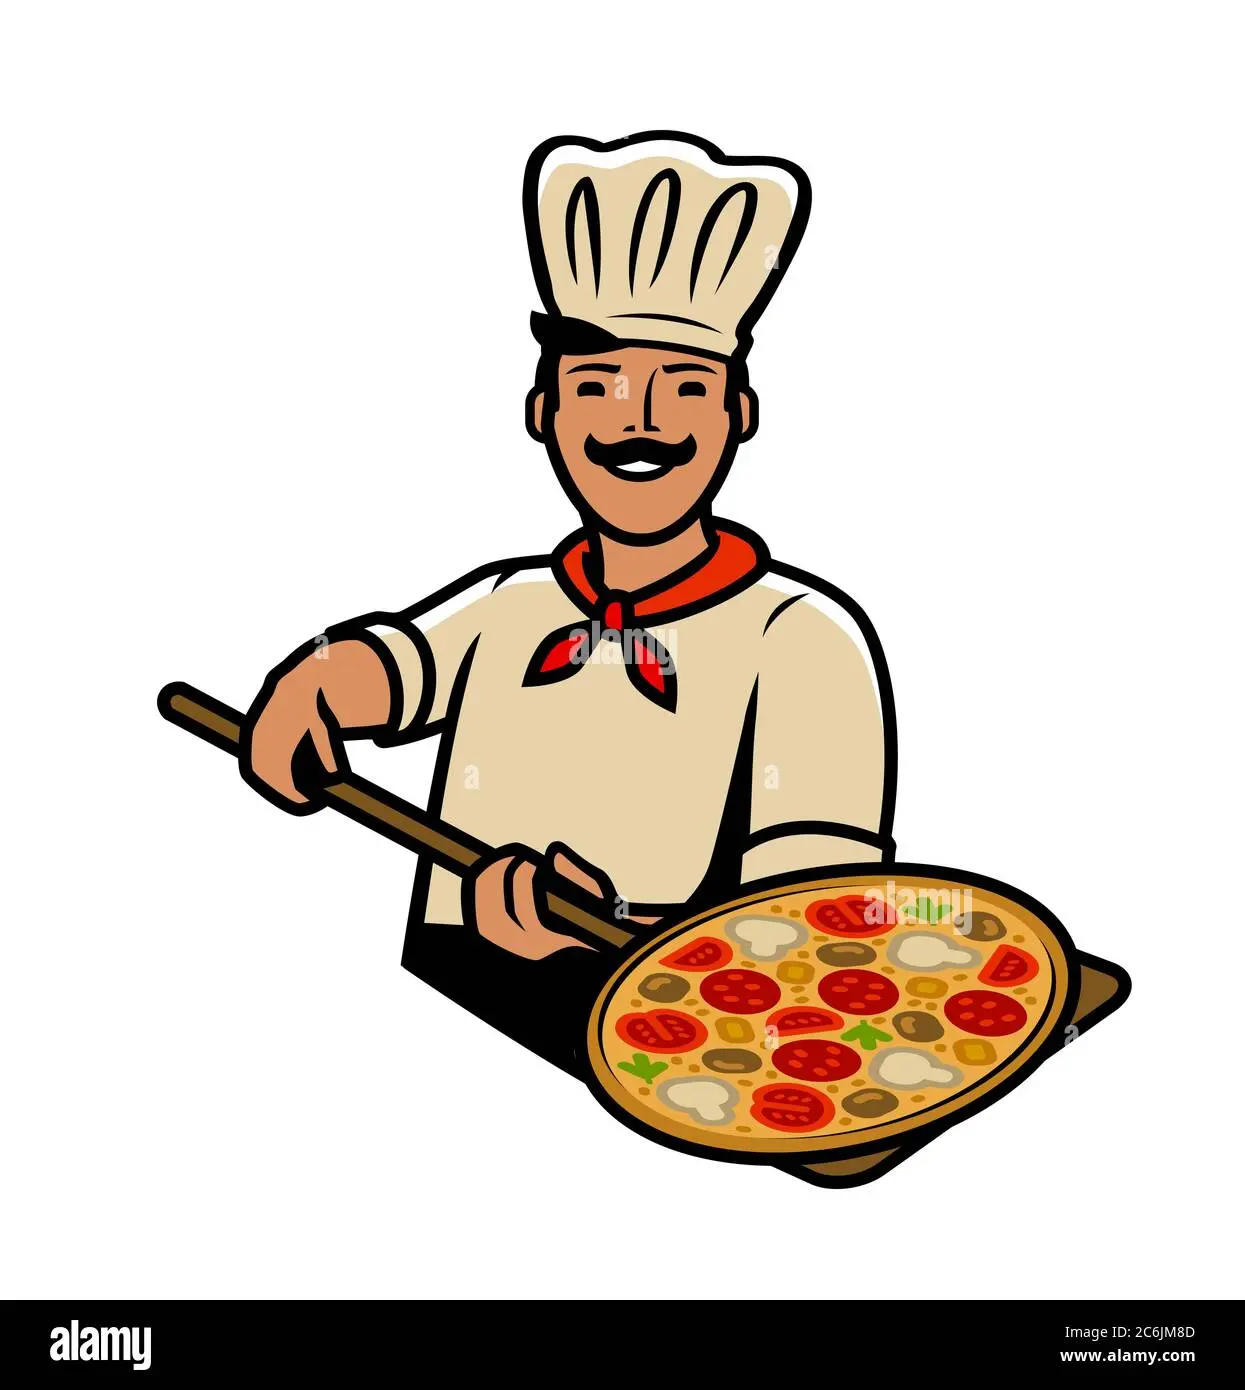 cocinero de pizzas - Qué hace un cocinero de pizzas